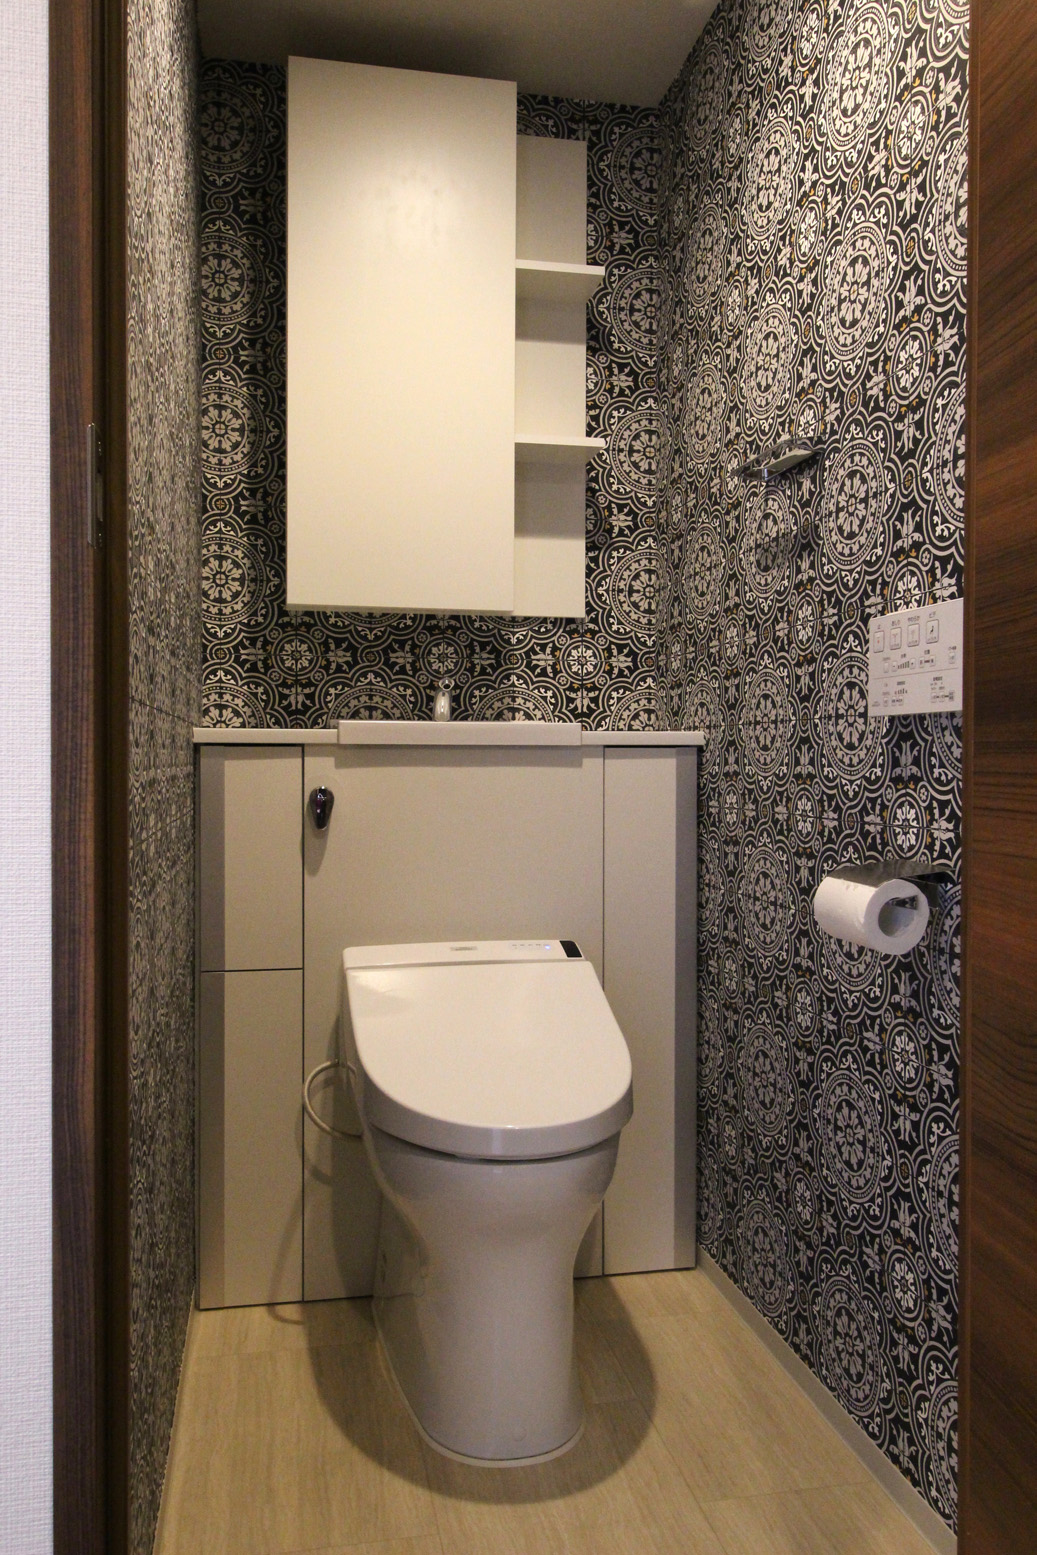 コラム09 トイレを輸入壁紙で異空間にしよう インテリアコーディネーター荒井詩万のブログ